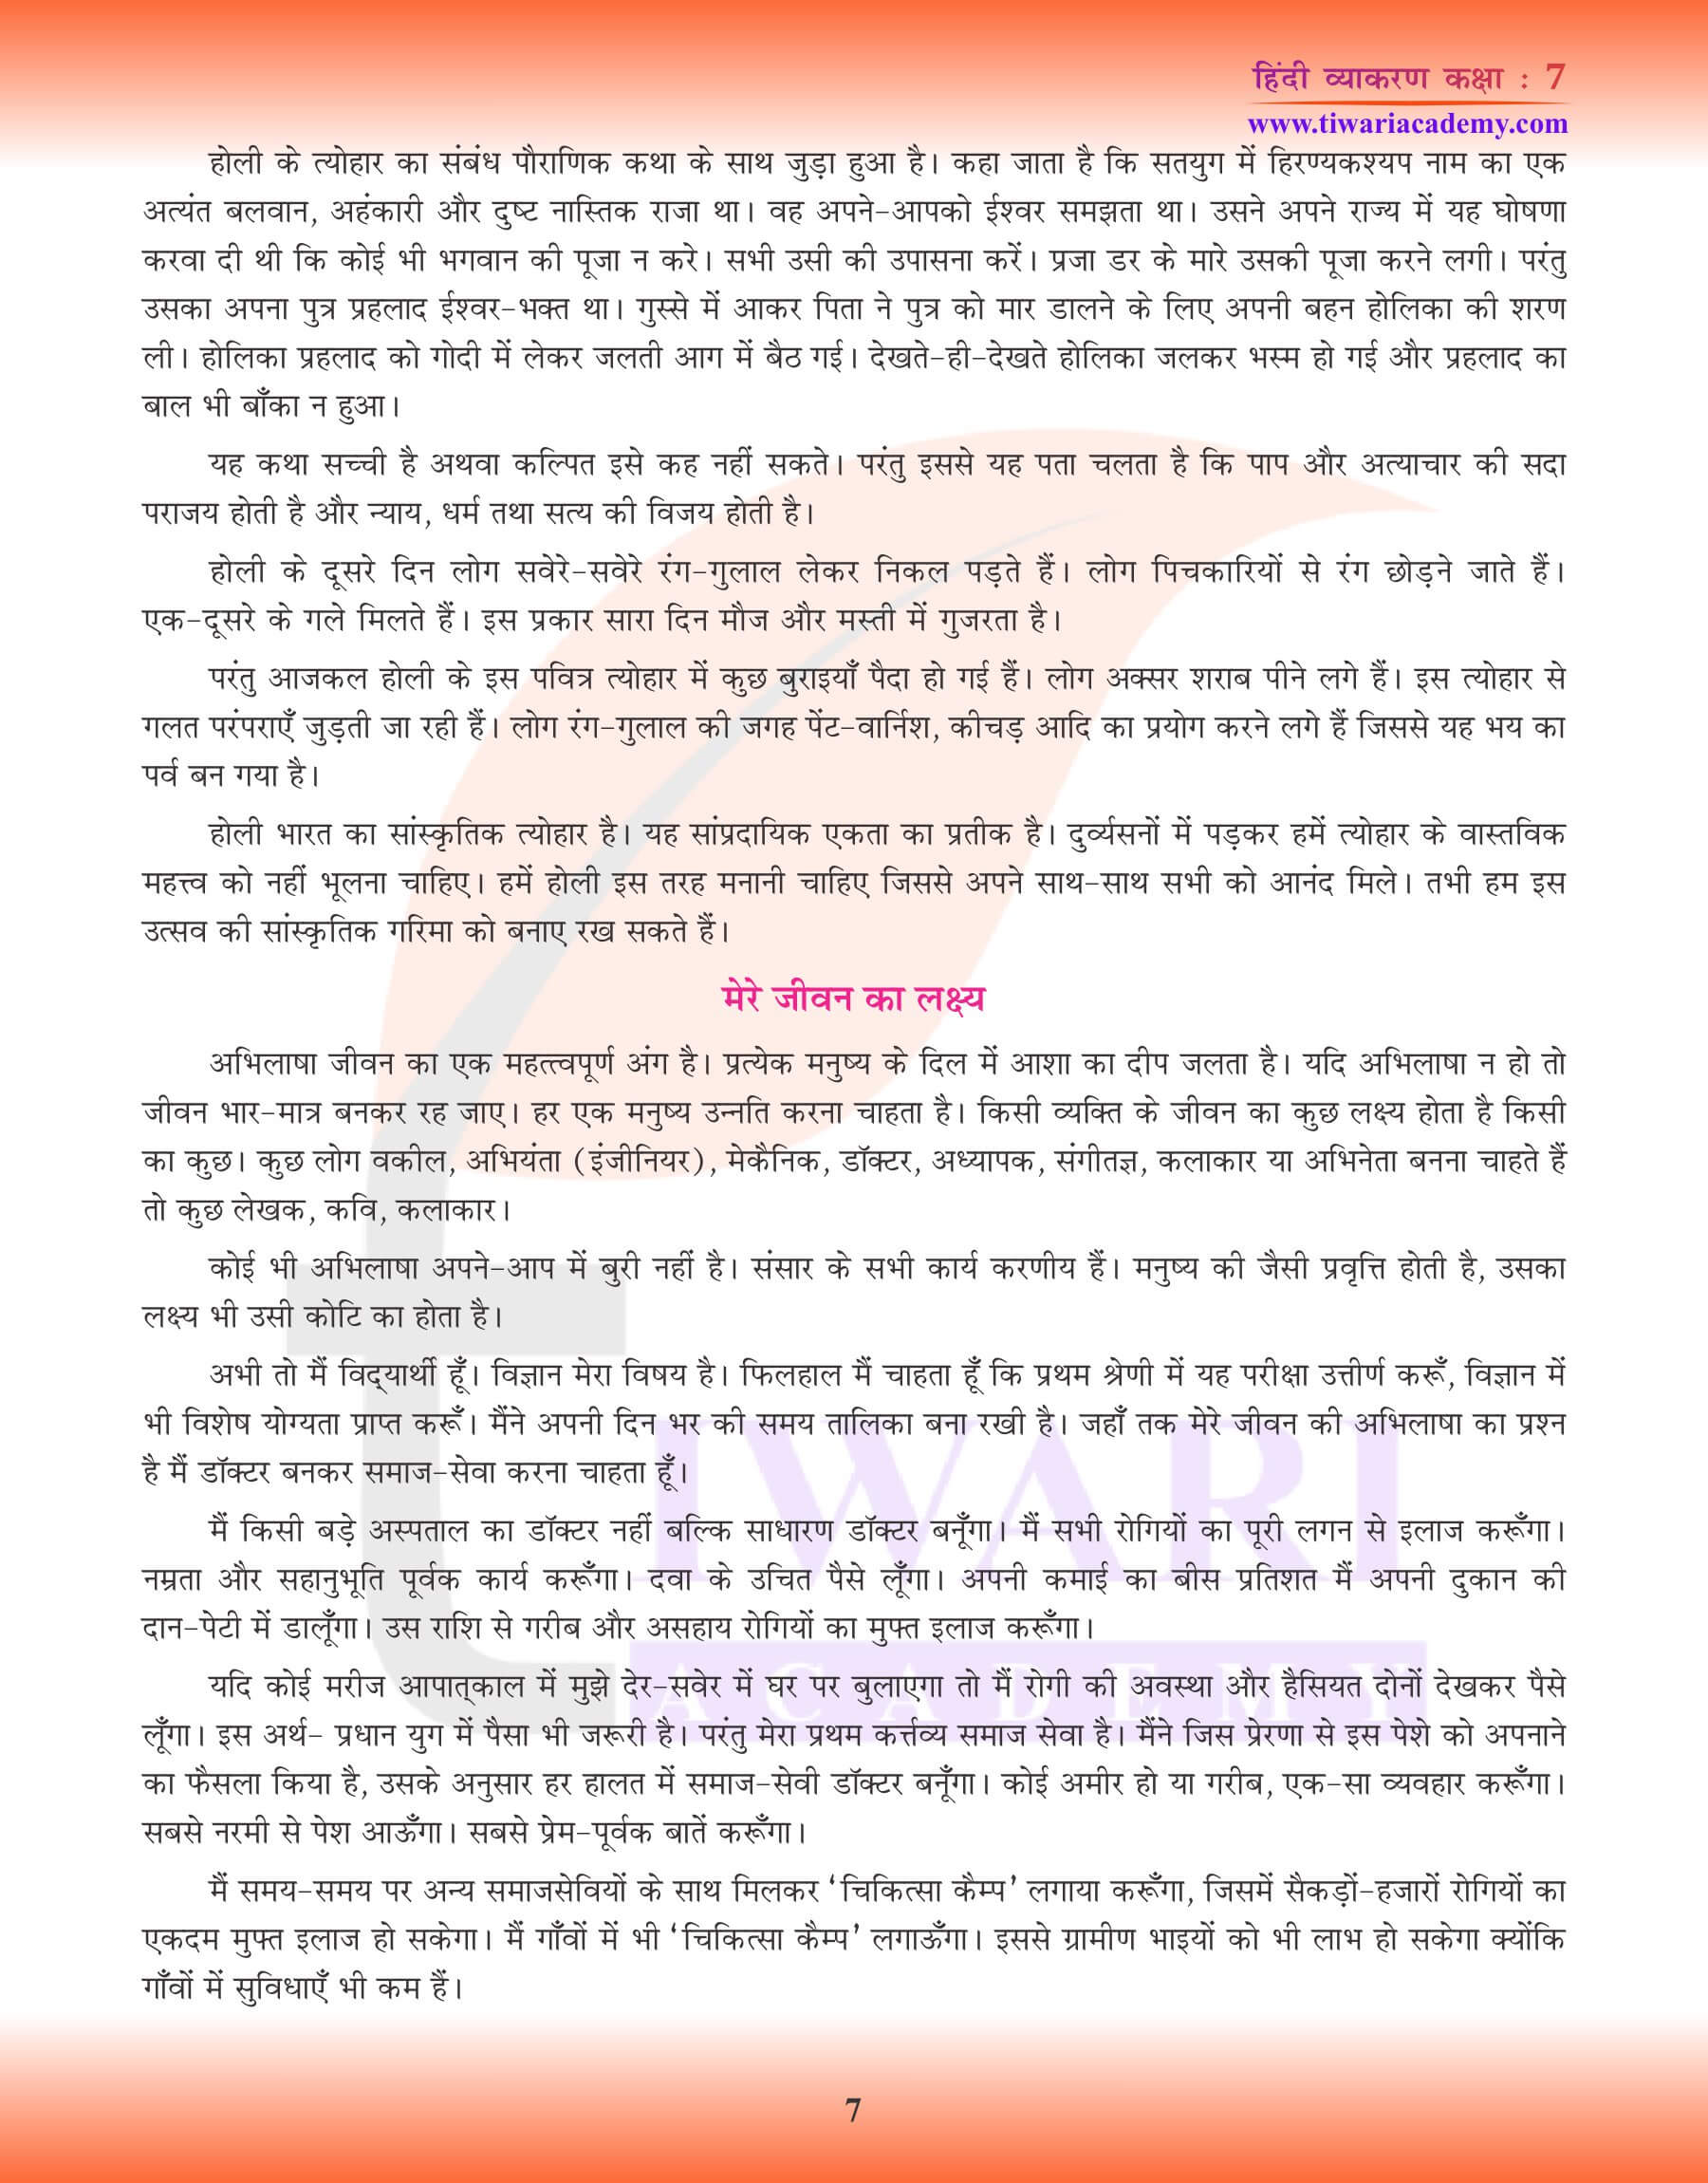 कक्षा 7 हिंदी व्याकरण में निबंध अभ्यास